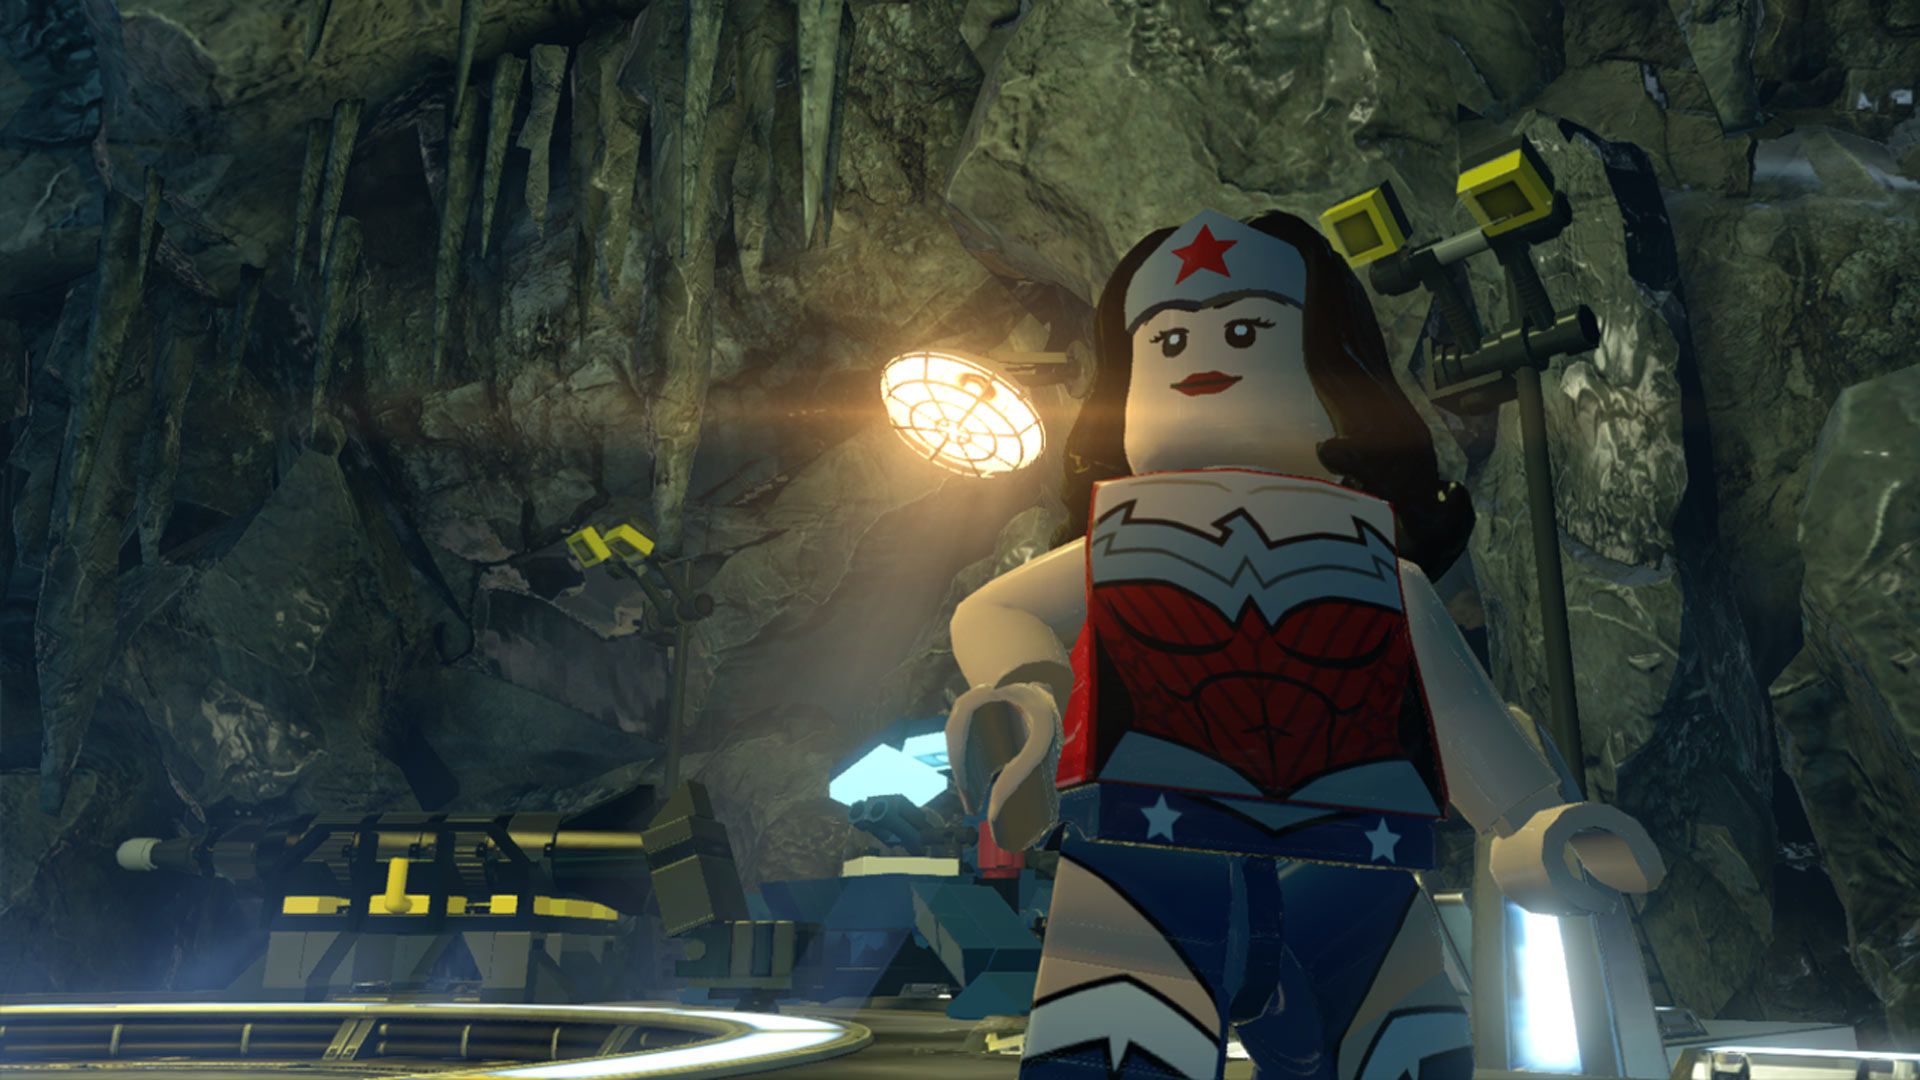 Скриншот-2 из игры Lego Batman 3: Beyond Gotham Premium Edition